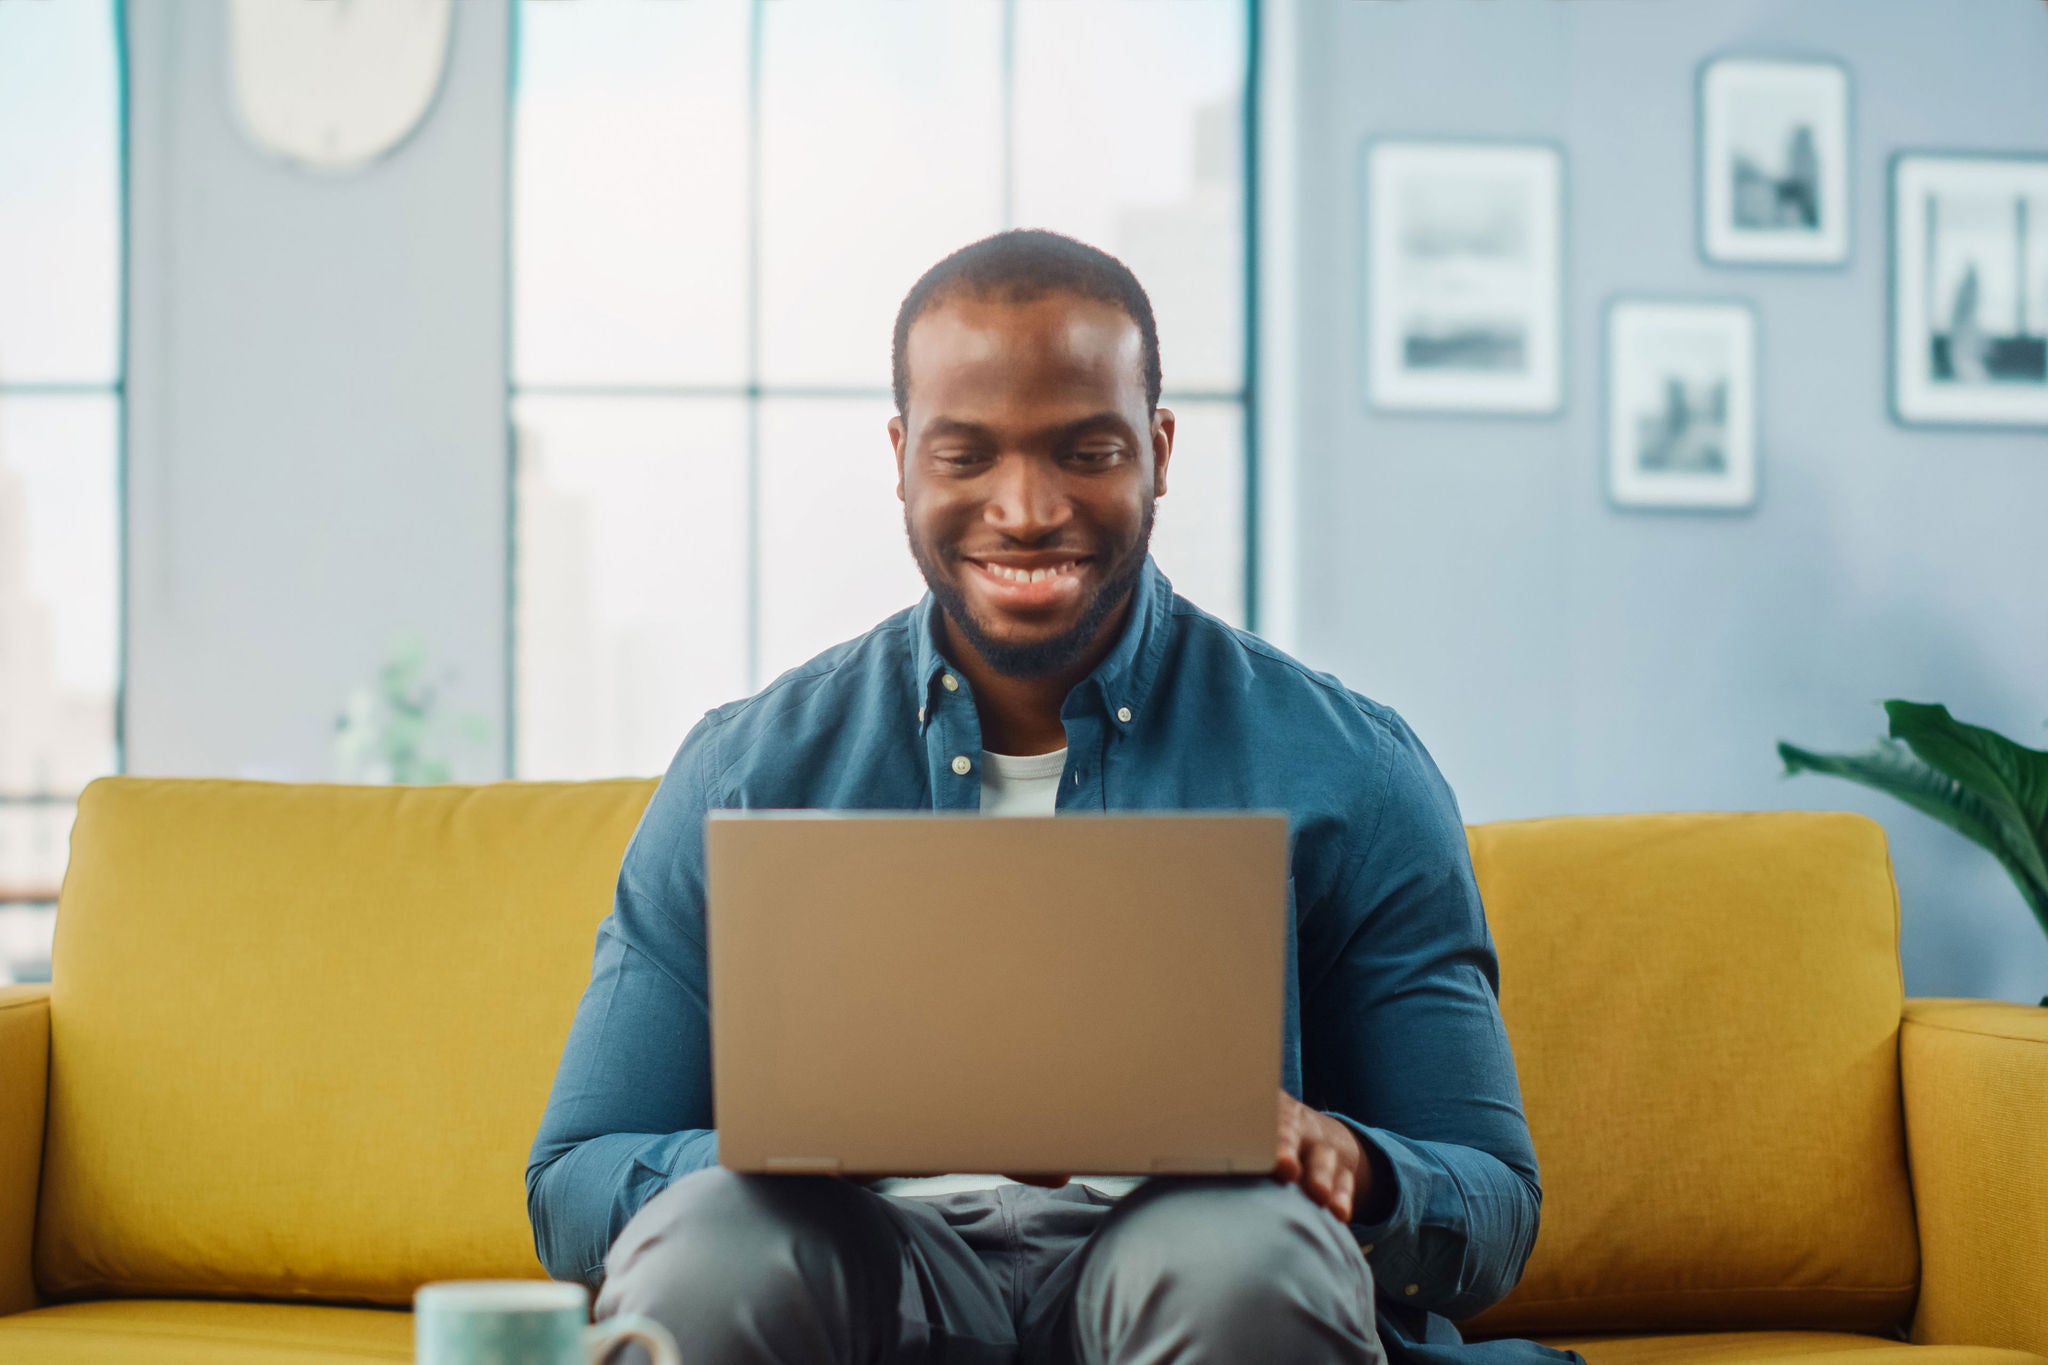 Man smiling at laptop on sofa